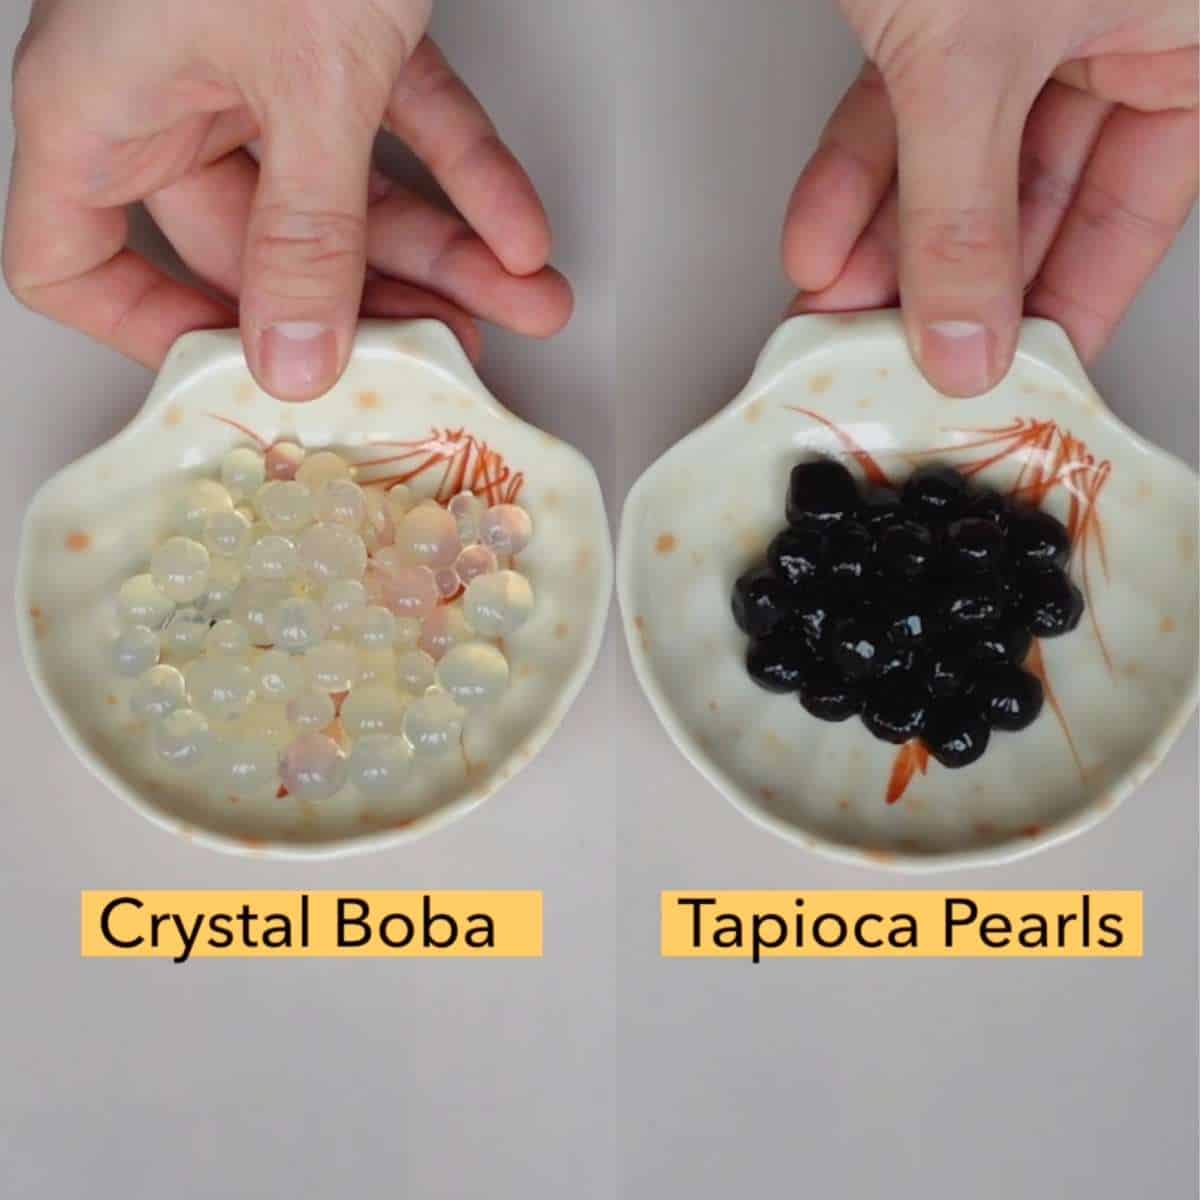 Crystal boba vs tapioca pearls